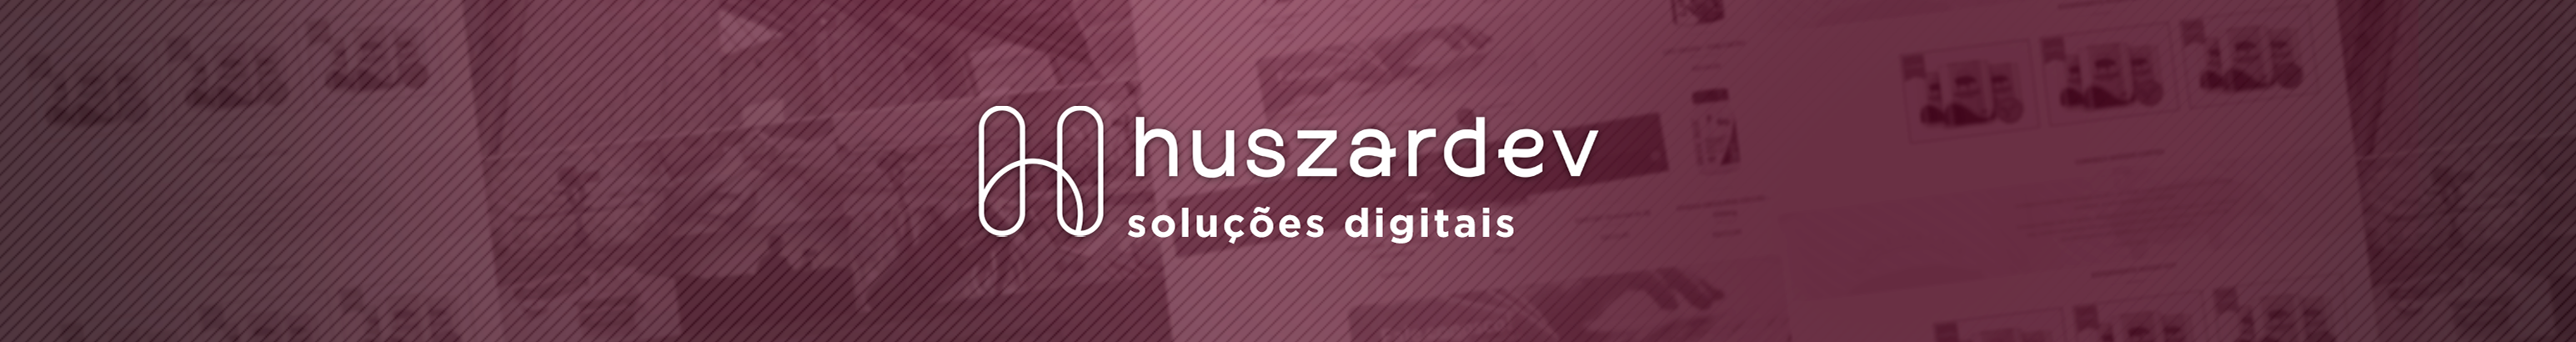 Felipe Huszar のプロファイルバナー